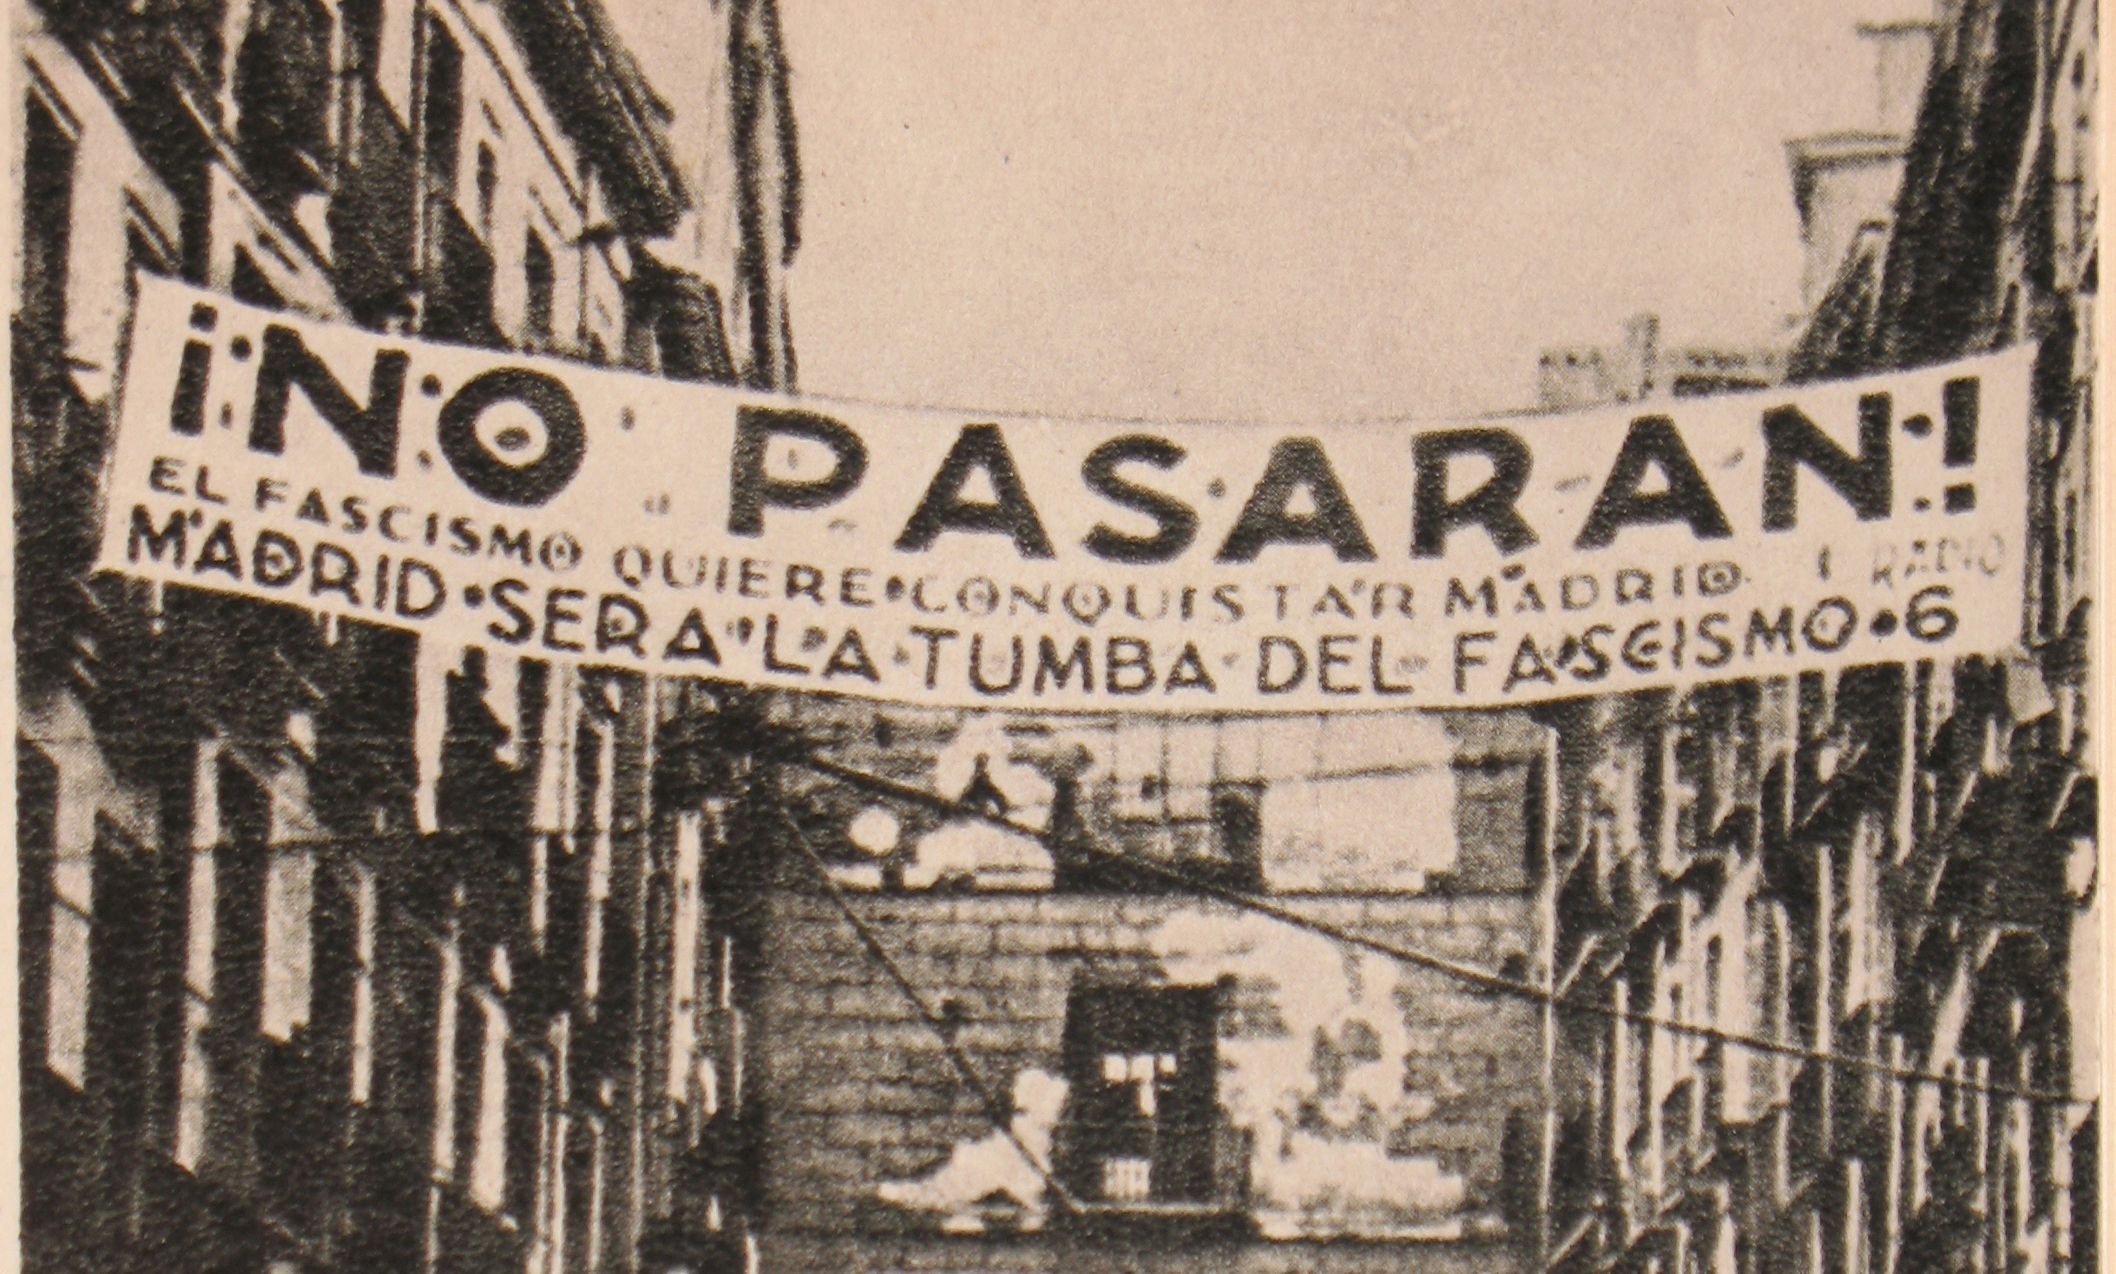 La frase "¡No pasarán!" a un cartell republicà a Madrid durant la Guerra Civil